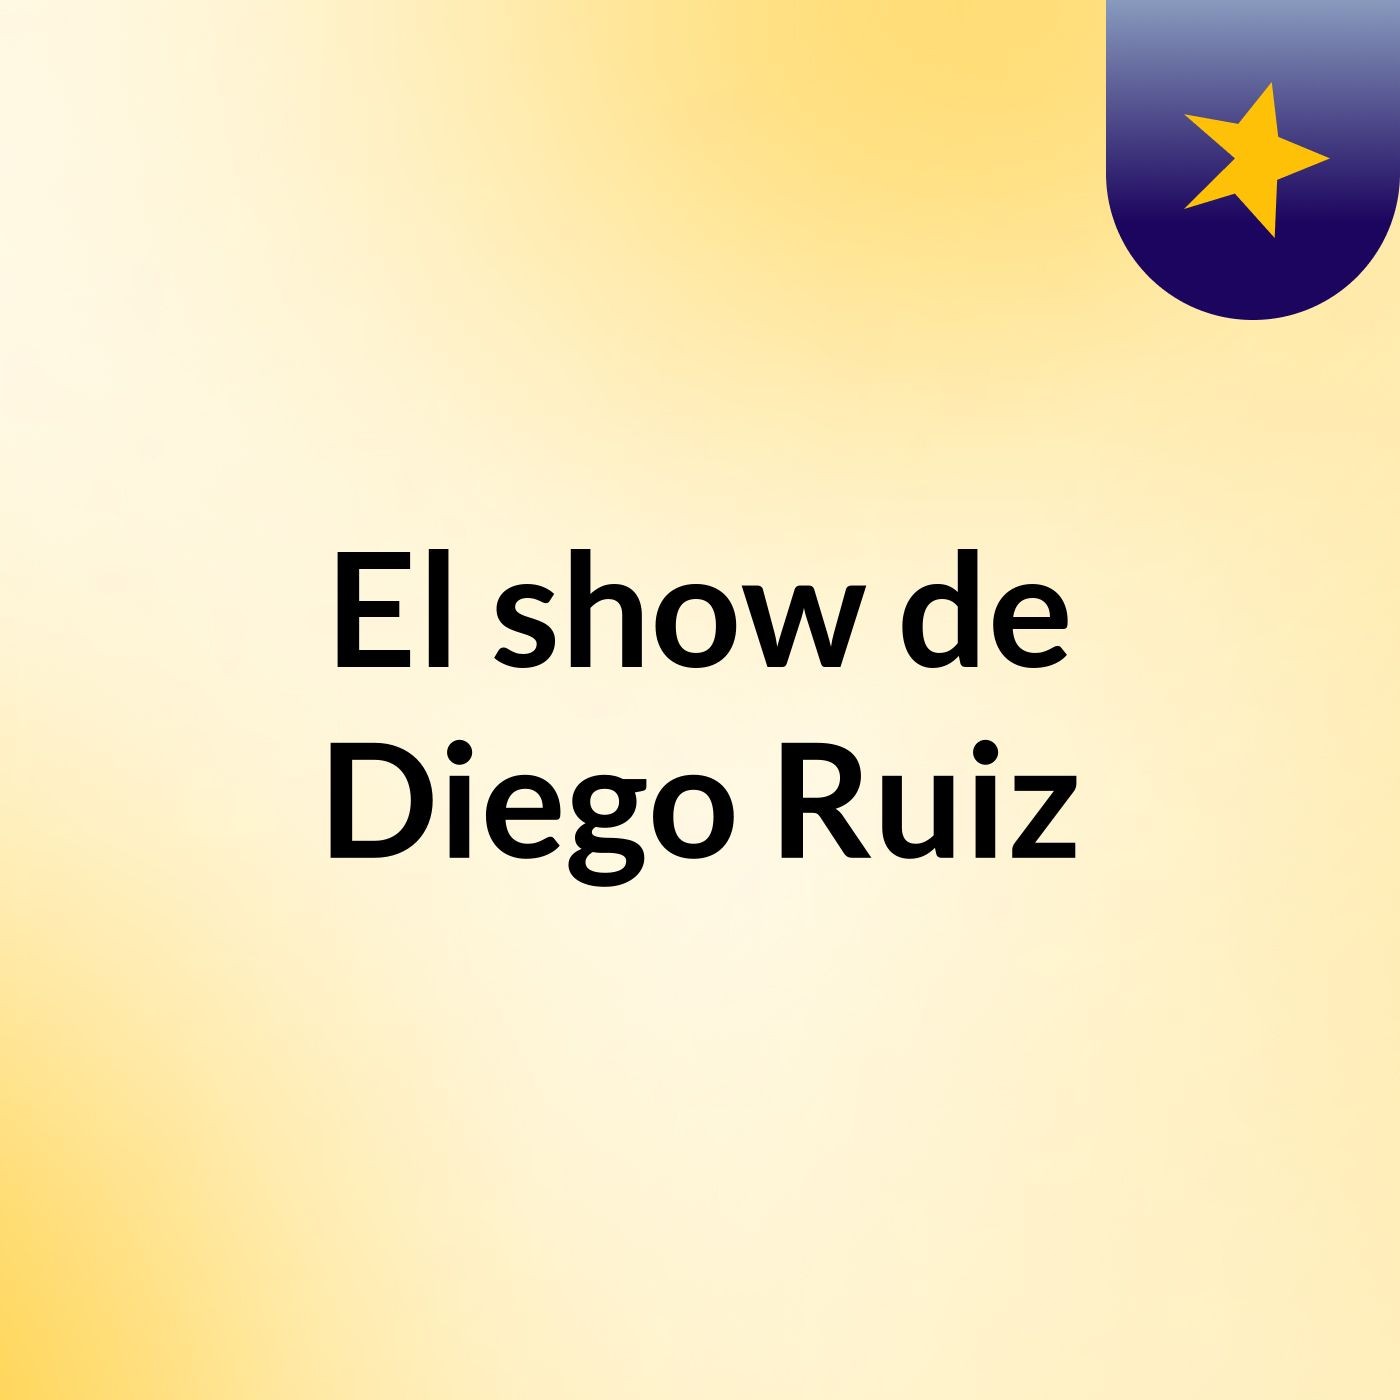 El show de Diego Ruiz